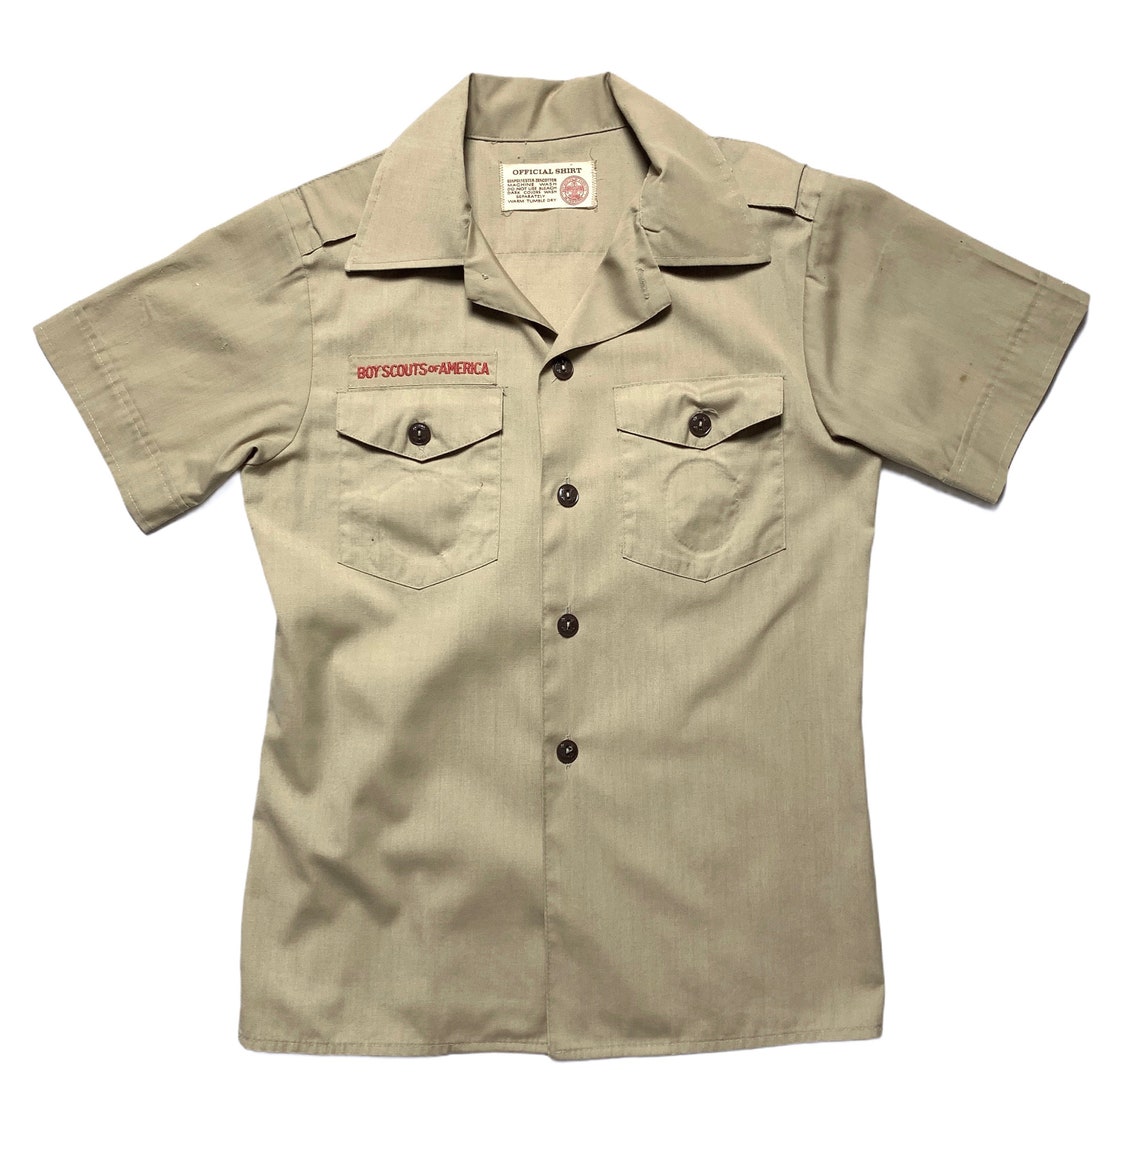 Vintage Boy Scouts Khaki Button-Up Shirt women's size | Etsy